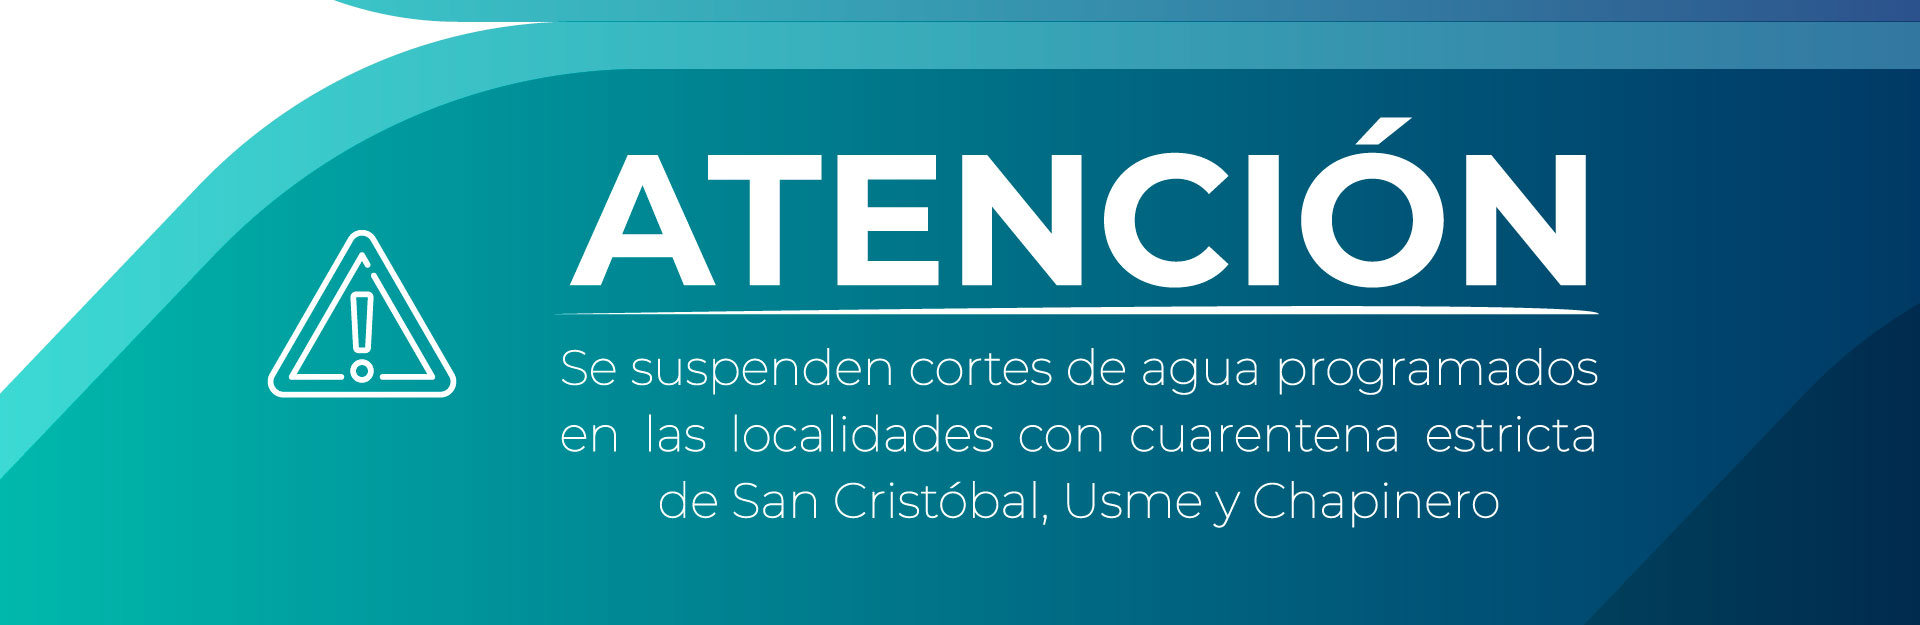 Se suspenden cortes de agua programados en las localidades con cuarentena estricta de San Cristóbal, Usme y Chapinero